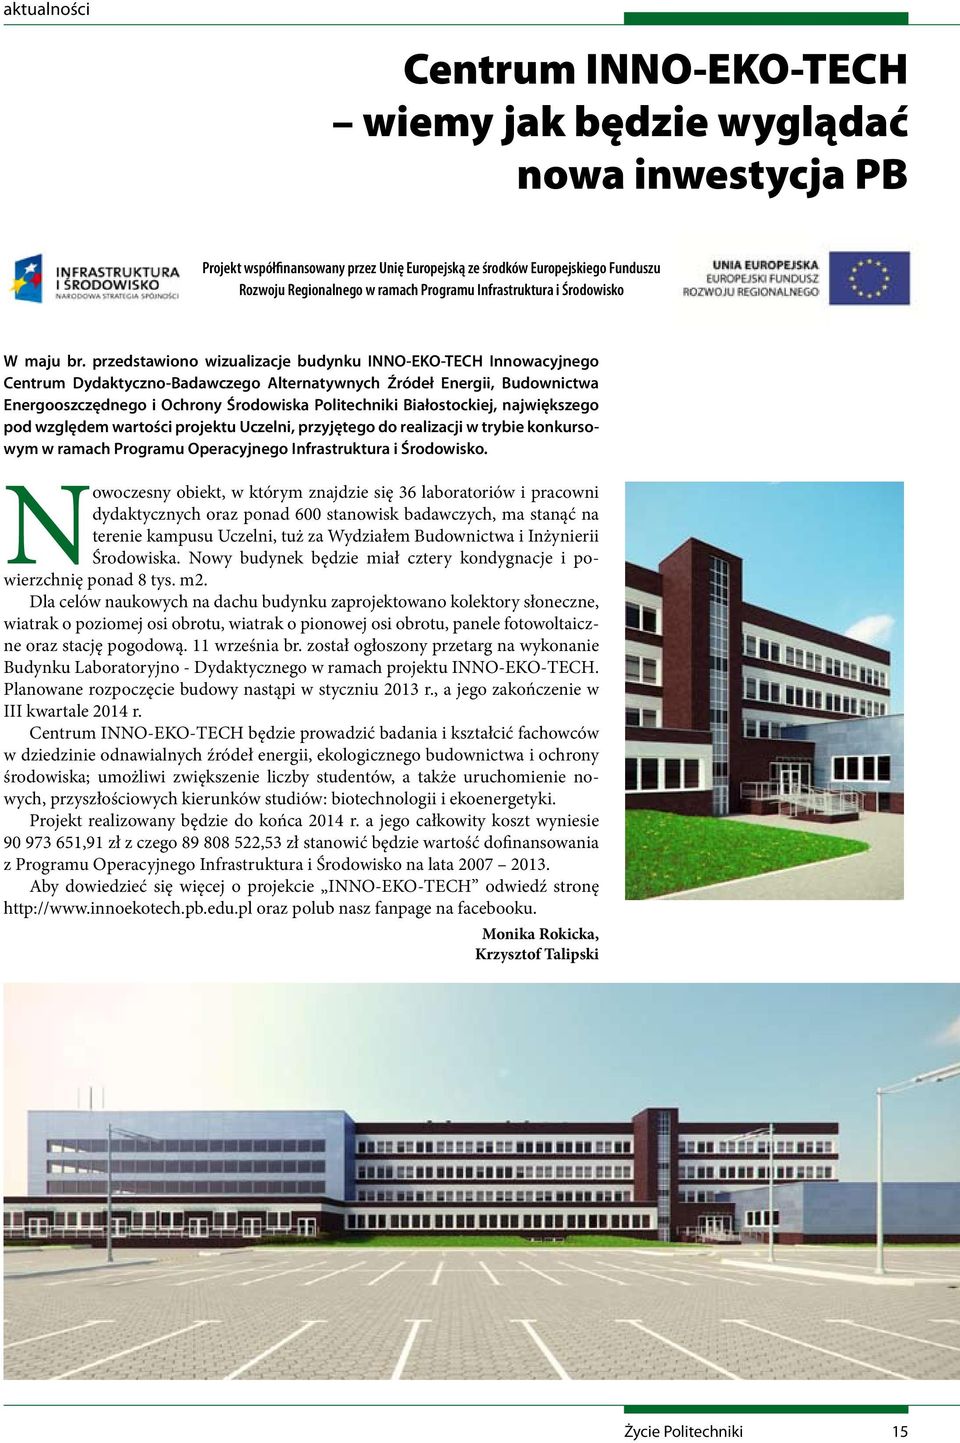 przedstawiono wizualizacje budynku INNO-EKO-TECH Innowacyjnego Centrum Dydaktyczno-Badawczego Alternatywnych Źródeł Energii, Budownictwa Energooszczędnego i Ochrony Środowiska Politechniki